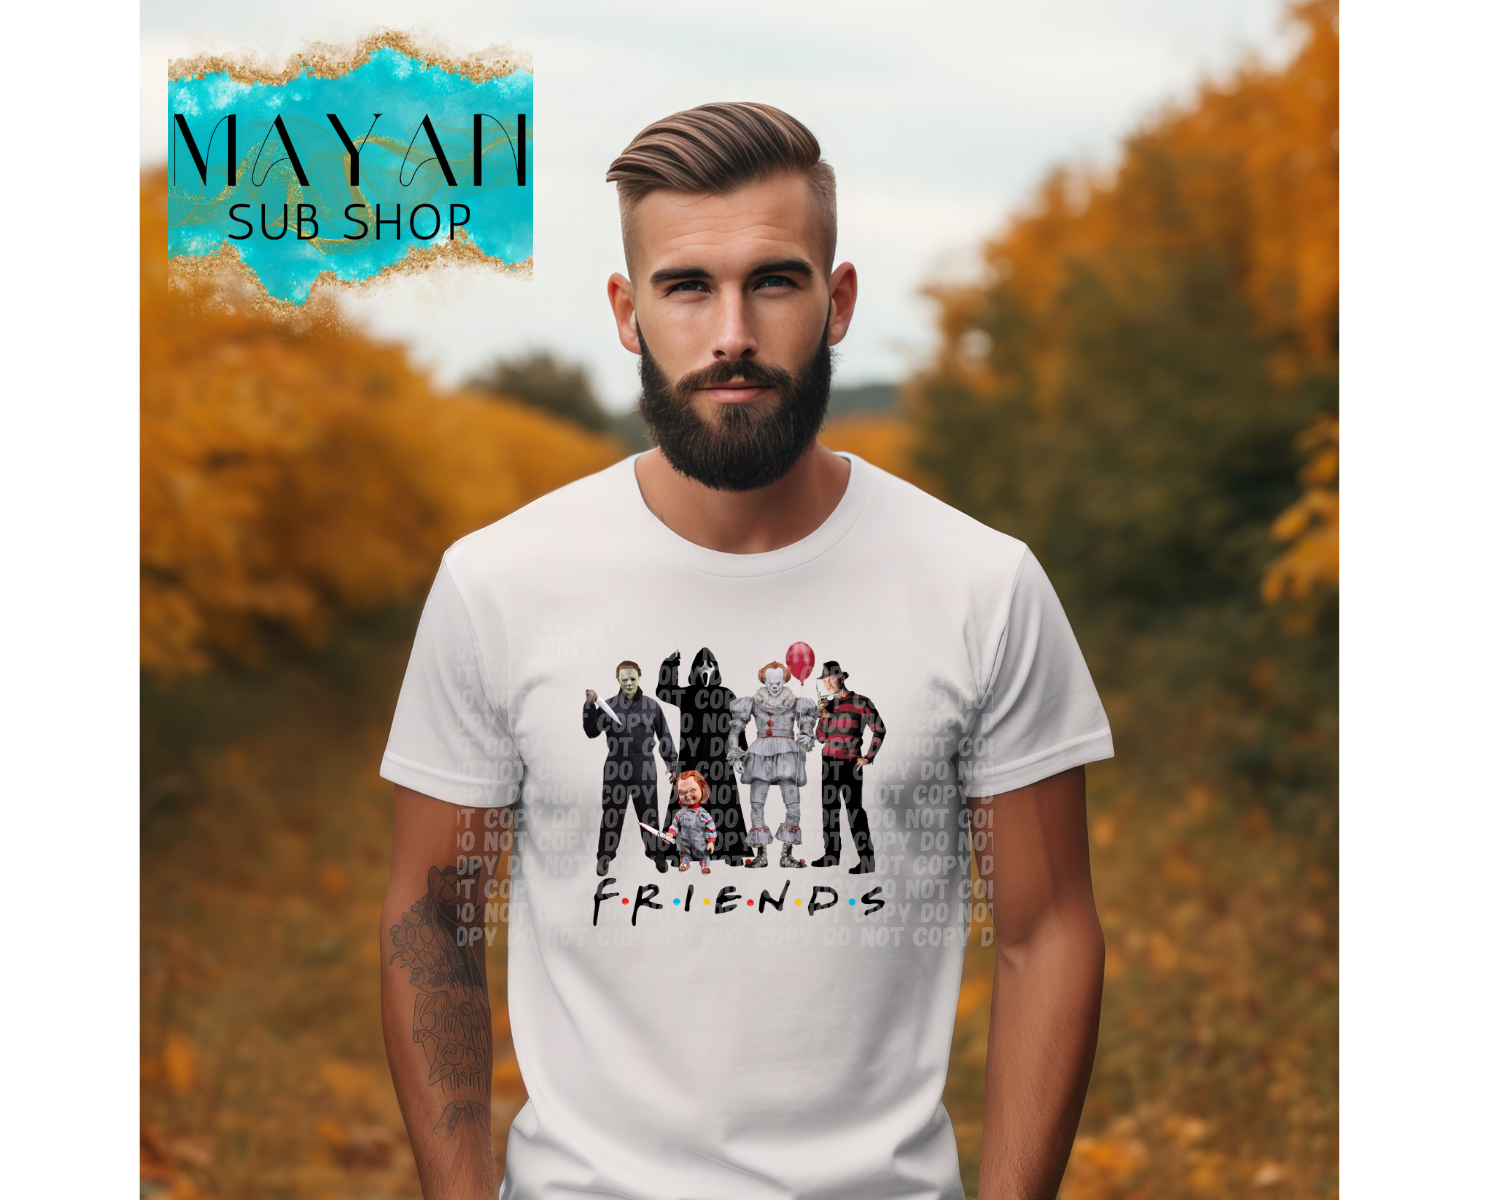 Halloween friends shirt. -Mayan Sub Shop